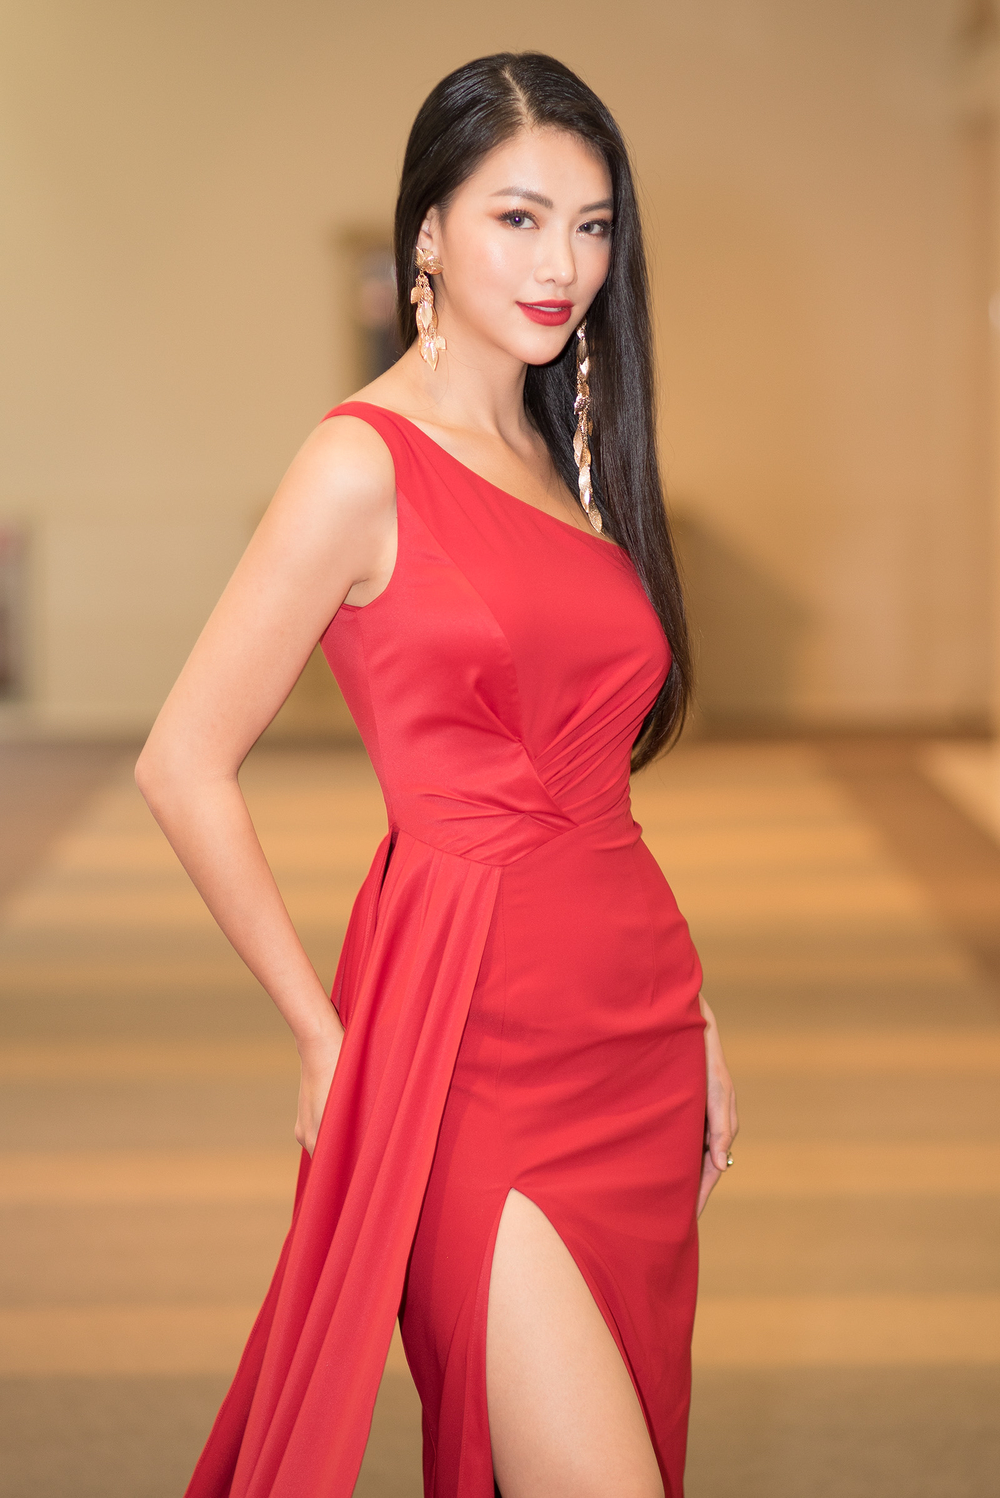 Hoa hậu Phương Khánh diện váy đỏ rực trong ngày nhận chức đại sứ ở Nhật Bản